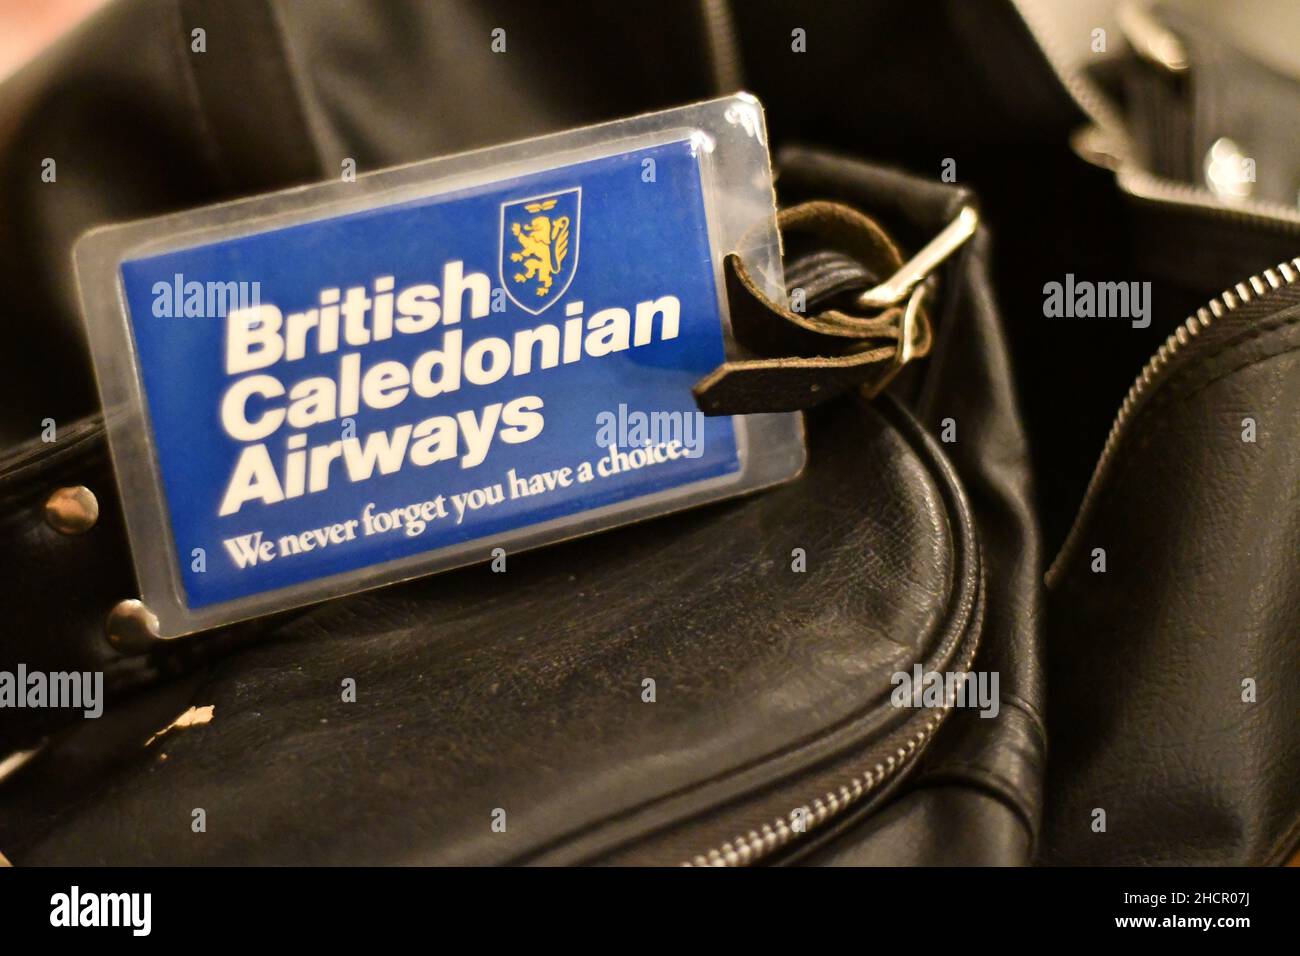 Un badge di viaggio British Caledonian Airways, tag, su una borsa da viaggio in pelle nera con lo slogan non dimentichiamo mai che avete una scelta Foto Stock